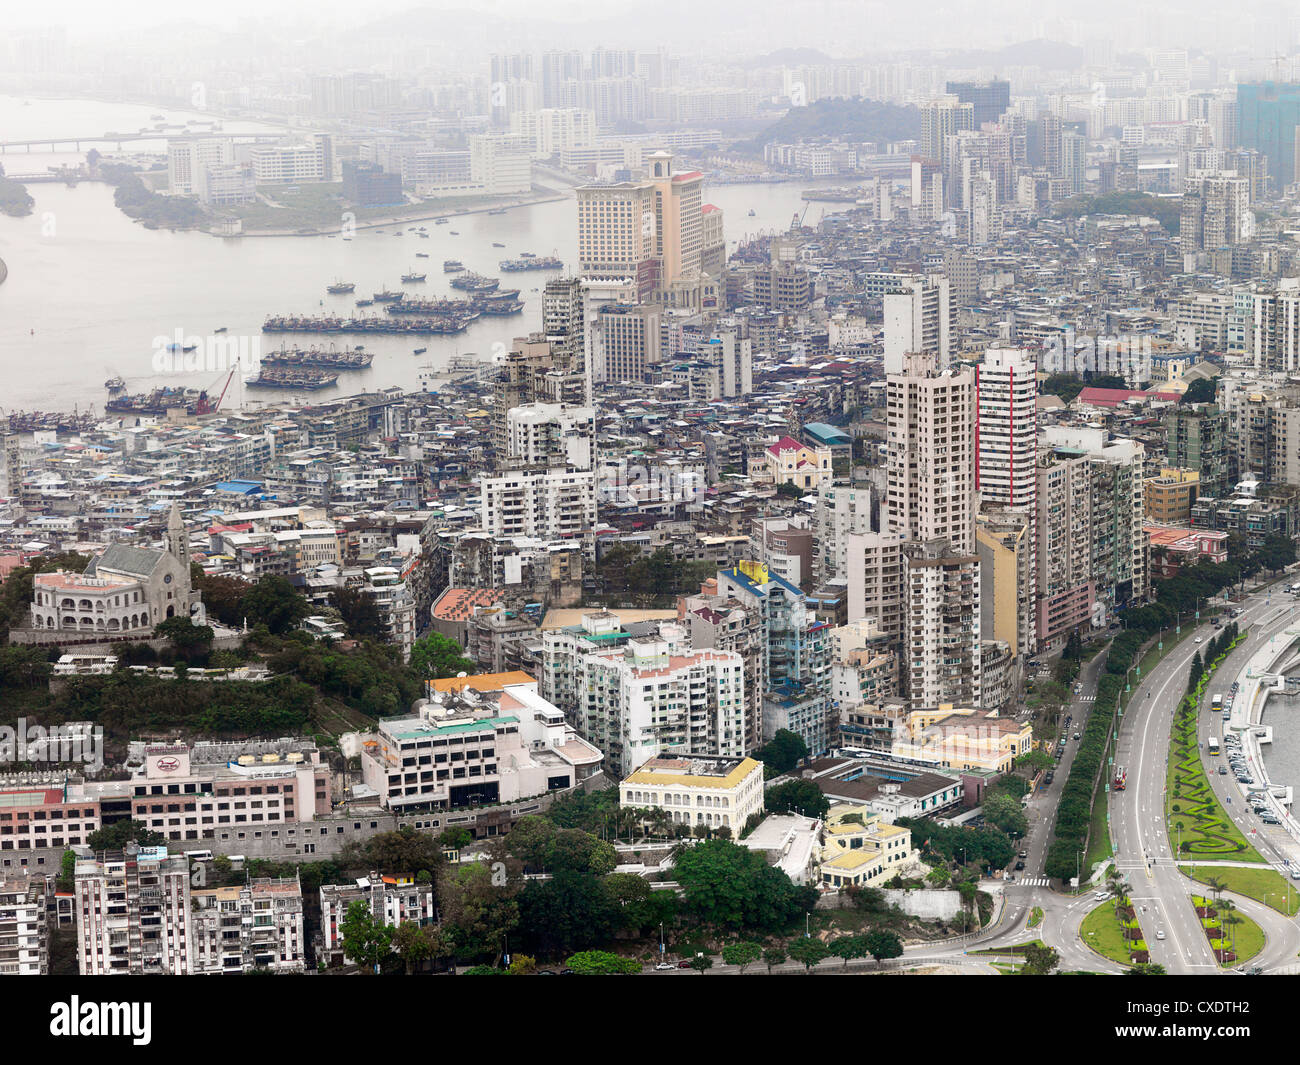 Ein Blick auf das Stadtbild von Macau und Gehäuse Crunch machen es deutlich, dass die Insel die meisten kondensierten Inseln in der Welt ist. Stockfoto